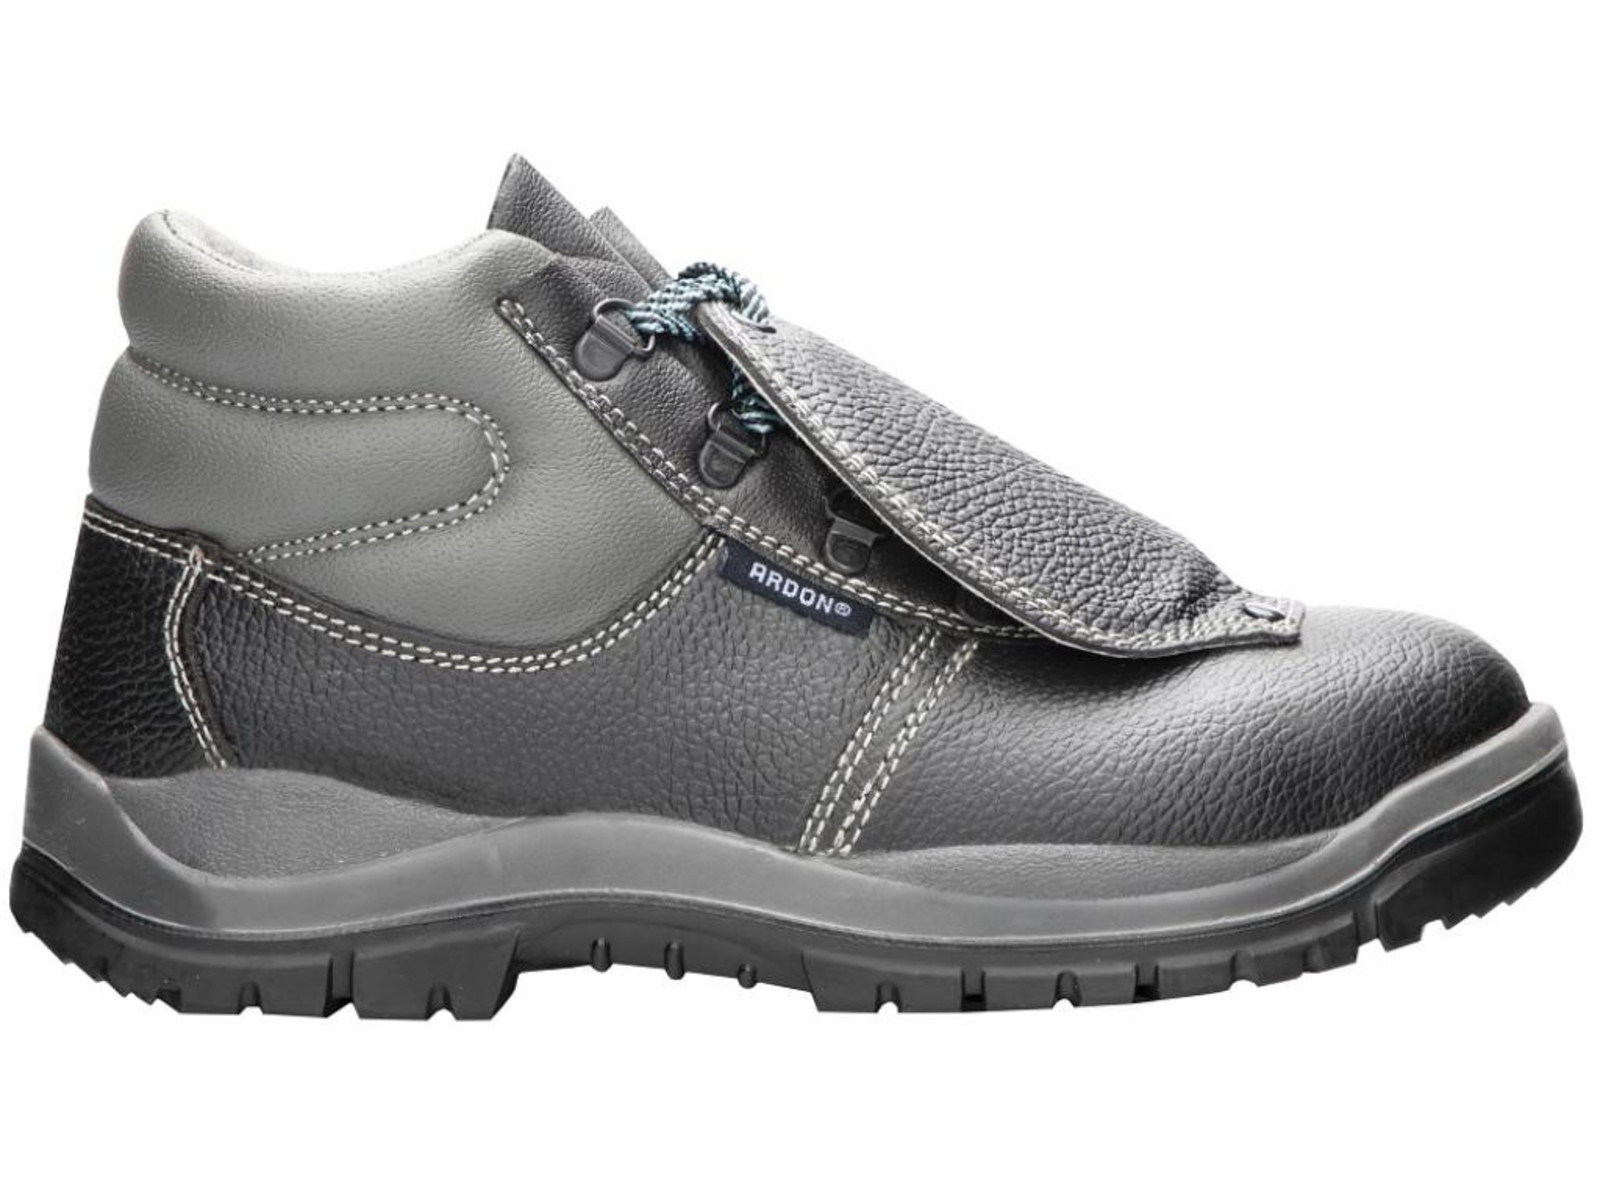 Bezpečnostná obuv ARDON® Integral S1P - veľkosť: 43, farba: sivá/čierna